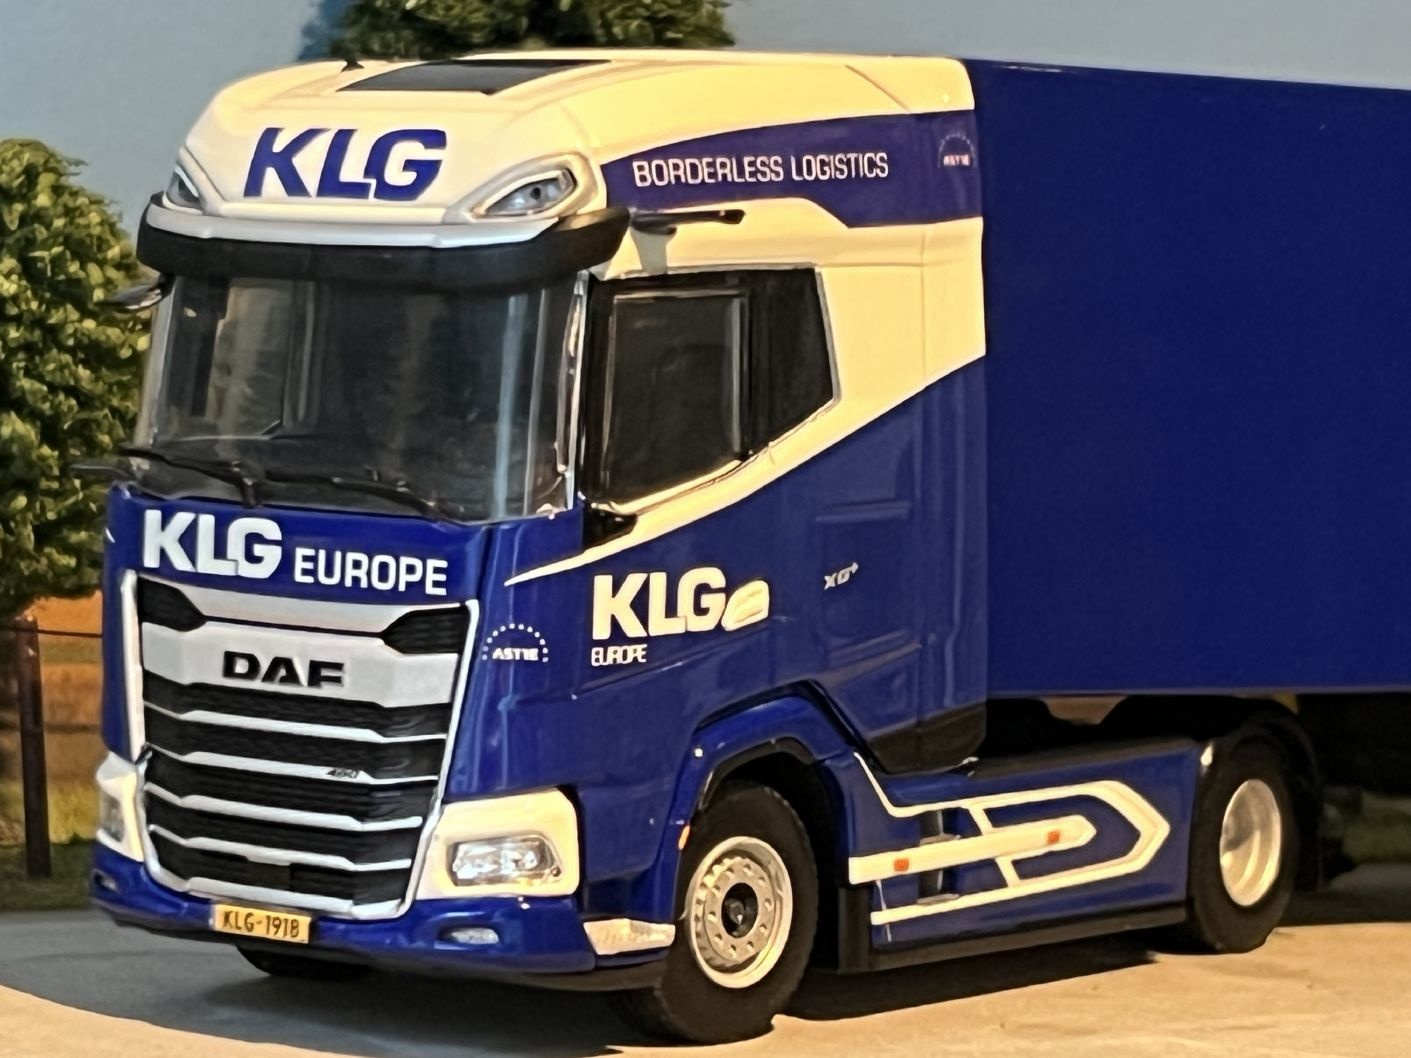 WSI DAF XG+ 4x2 met 3-as box trailer KLG EUROPE